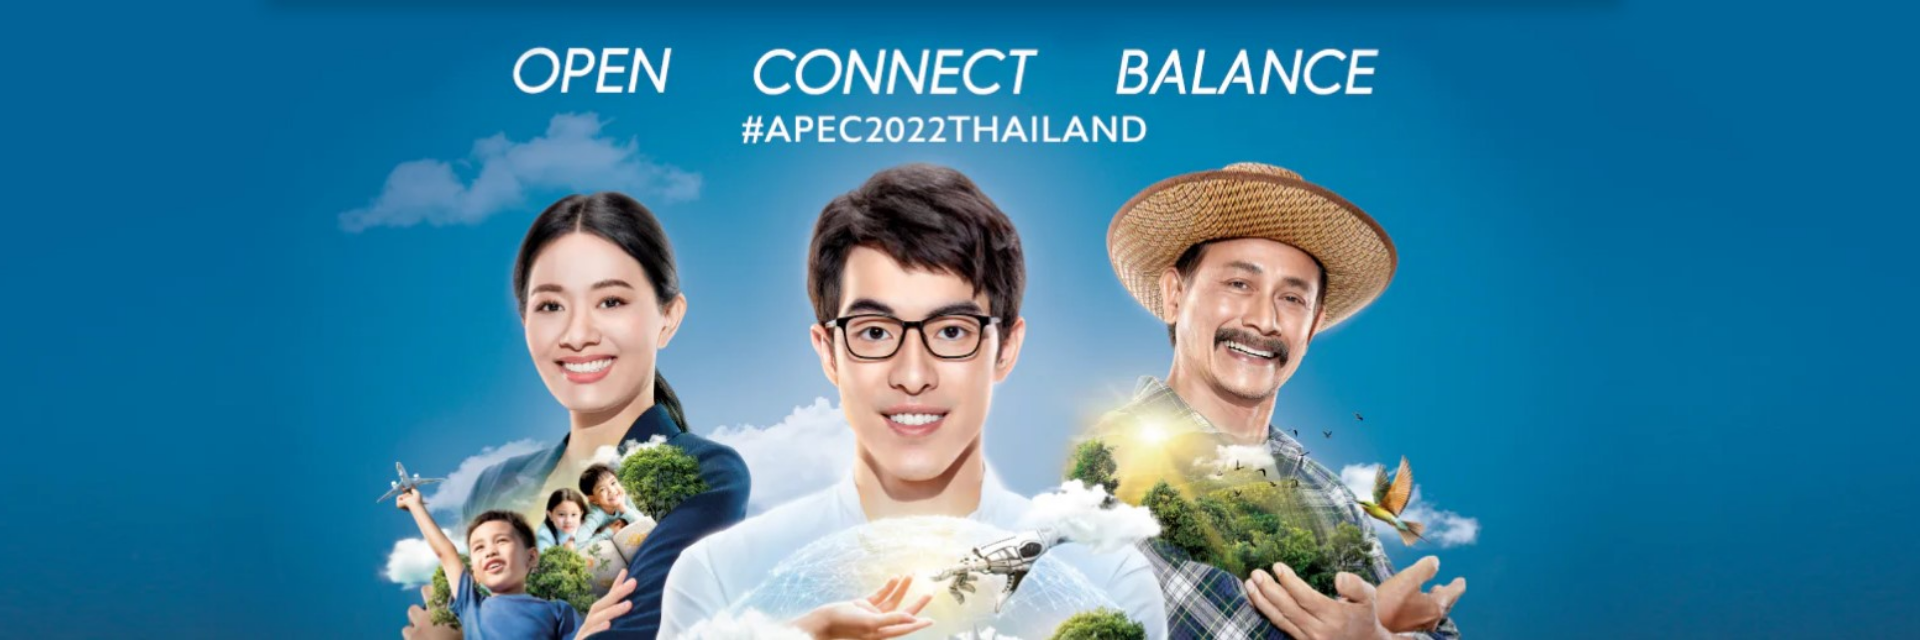 OPEN CONNECT BALANCE - APEC2022